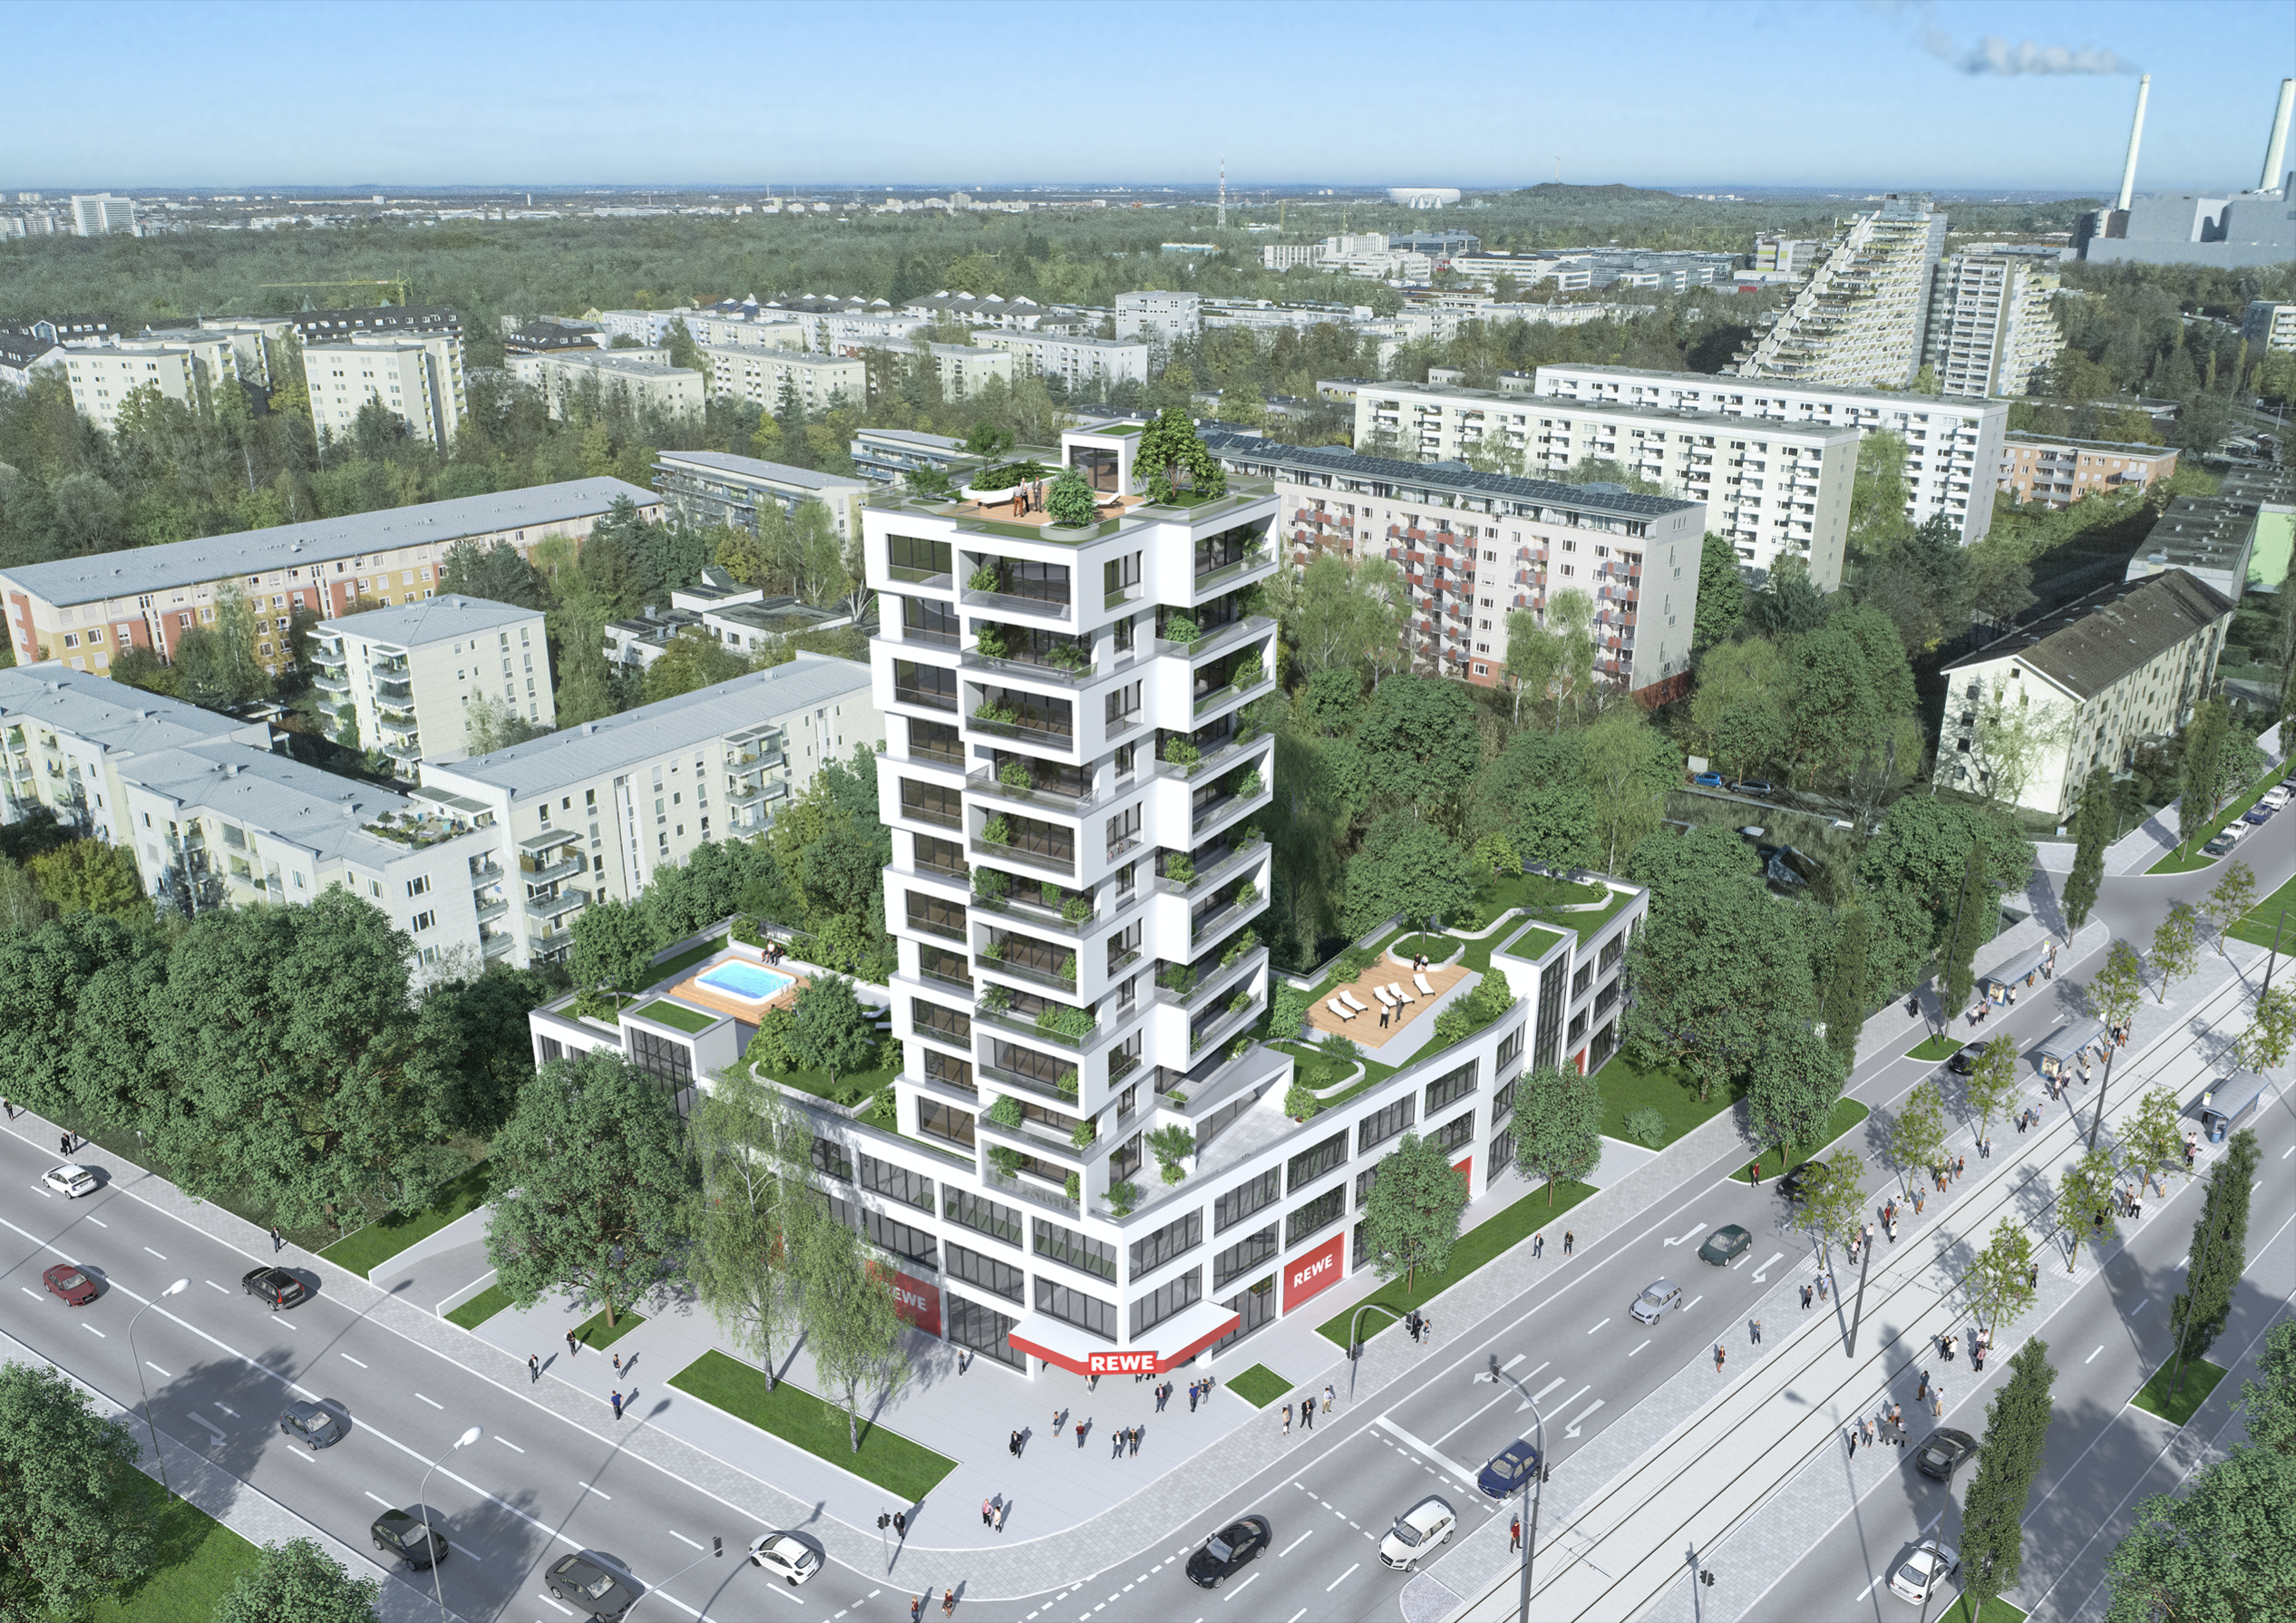 Architekturvisualisierung einer Hochhaus Immobilie in München